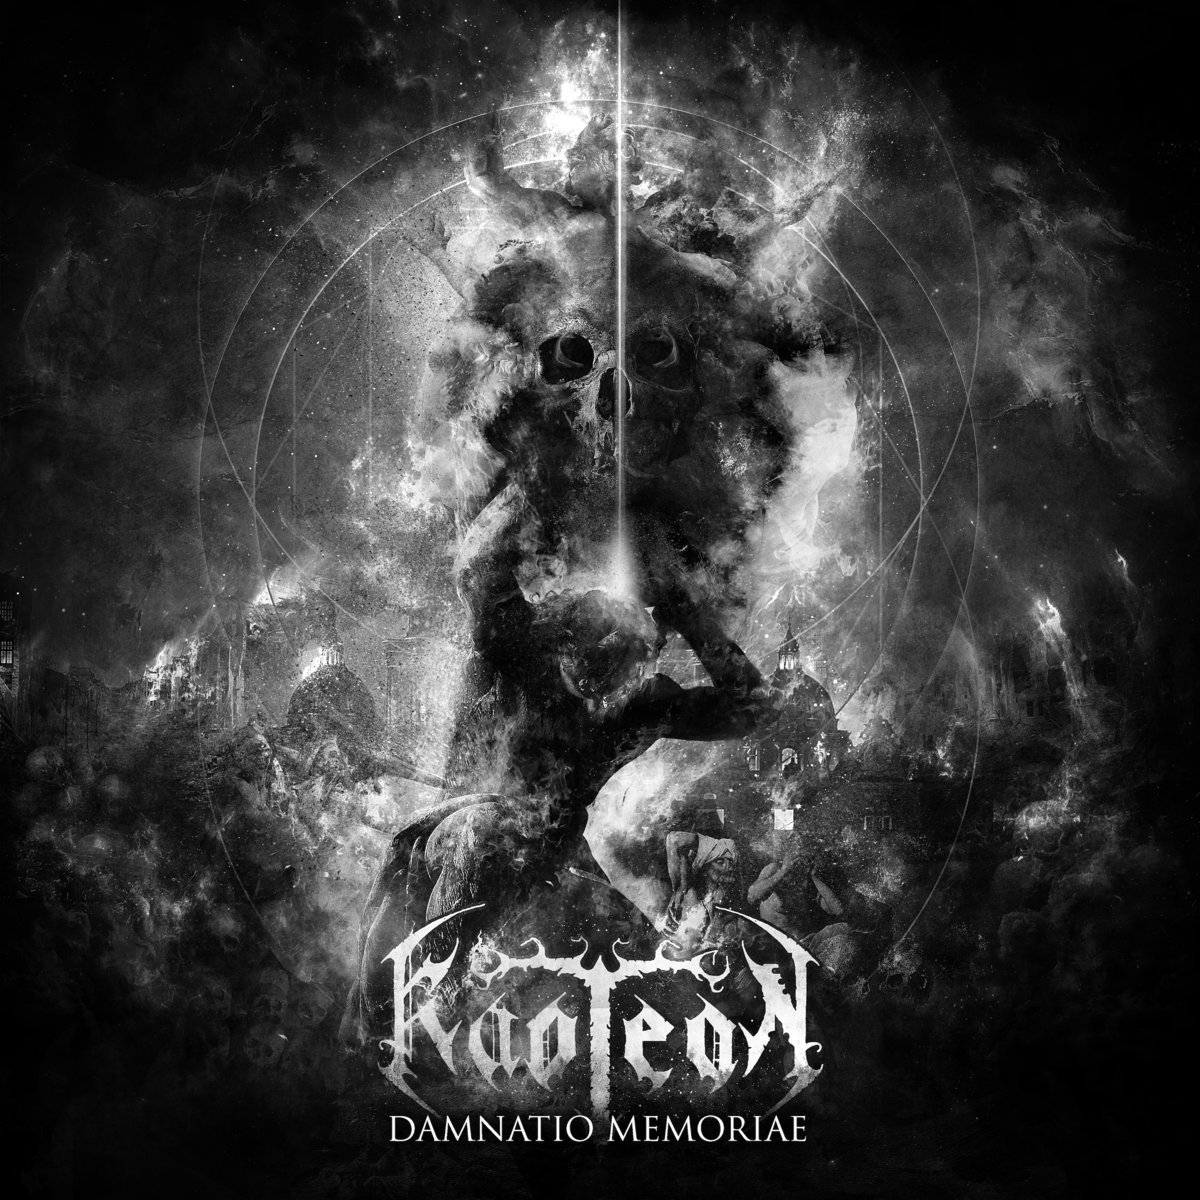 KAOTEON nuevo álbum “Damnatio Memoriae” con la participación de miembros de Marduk y Obscura